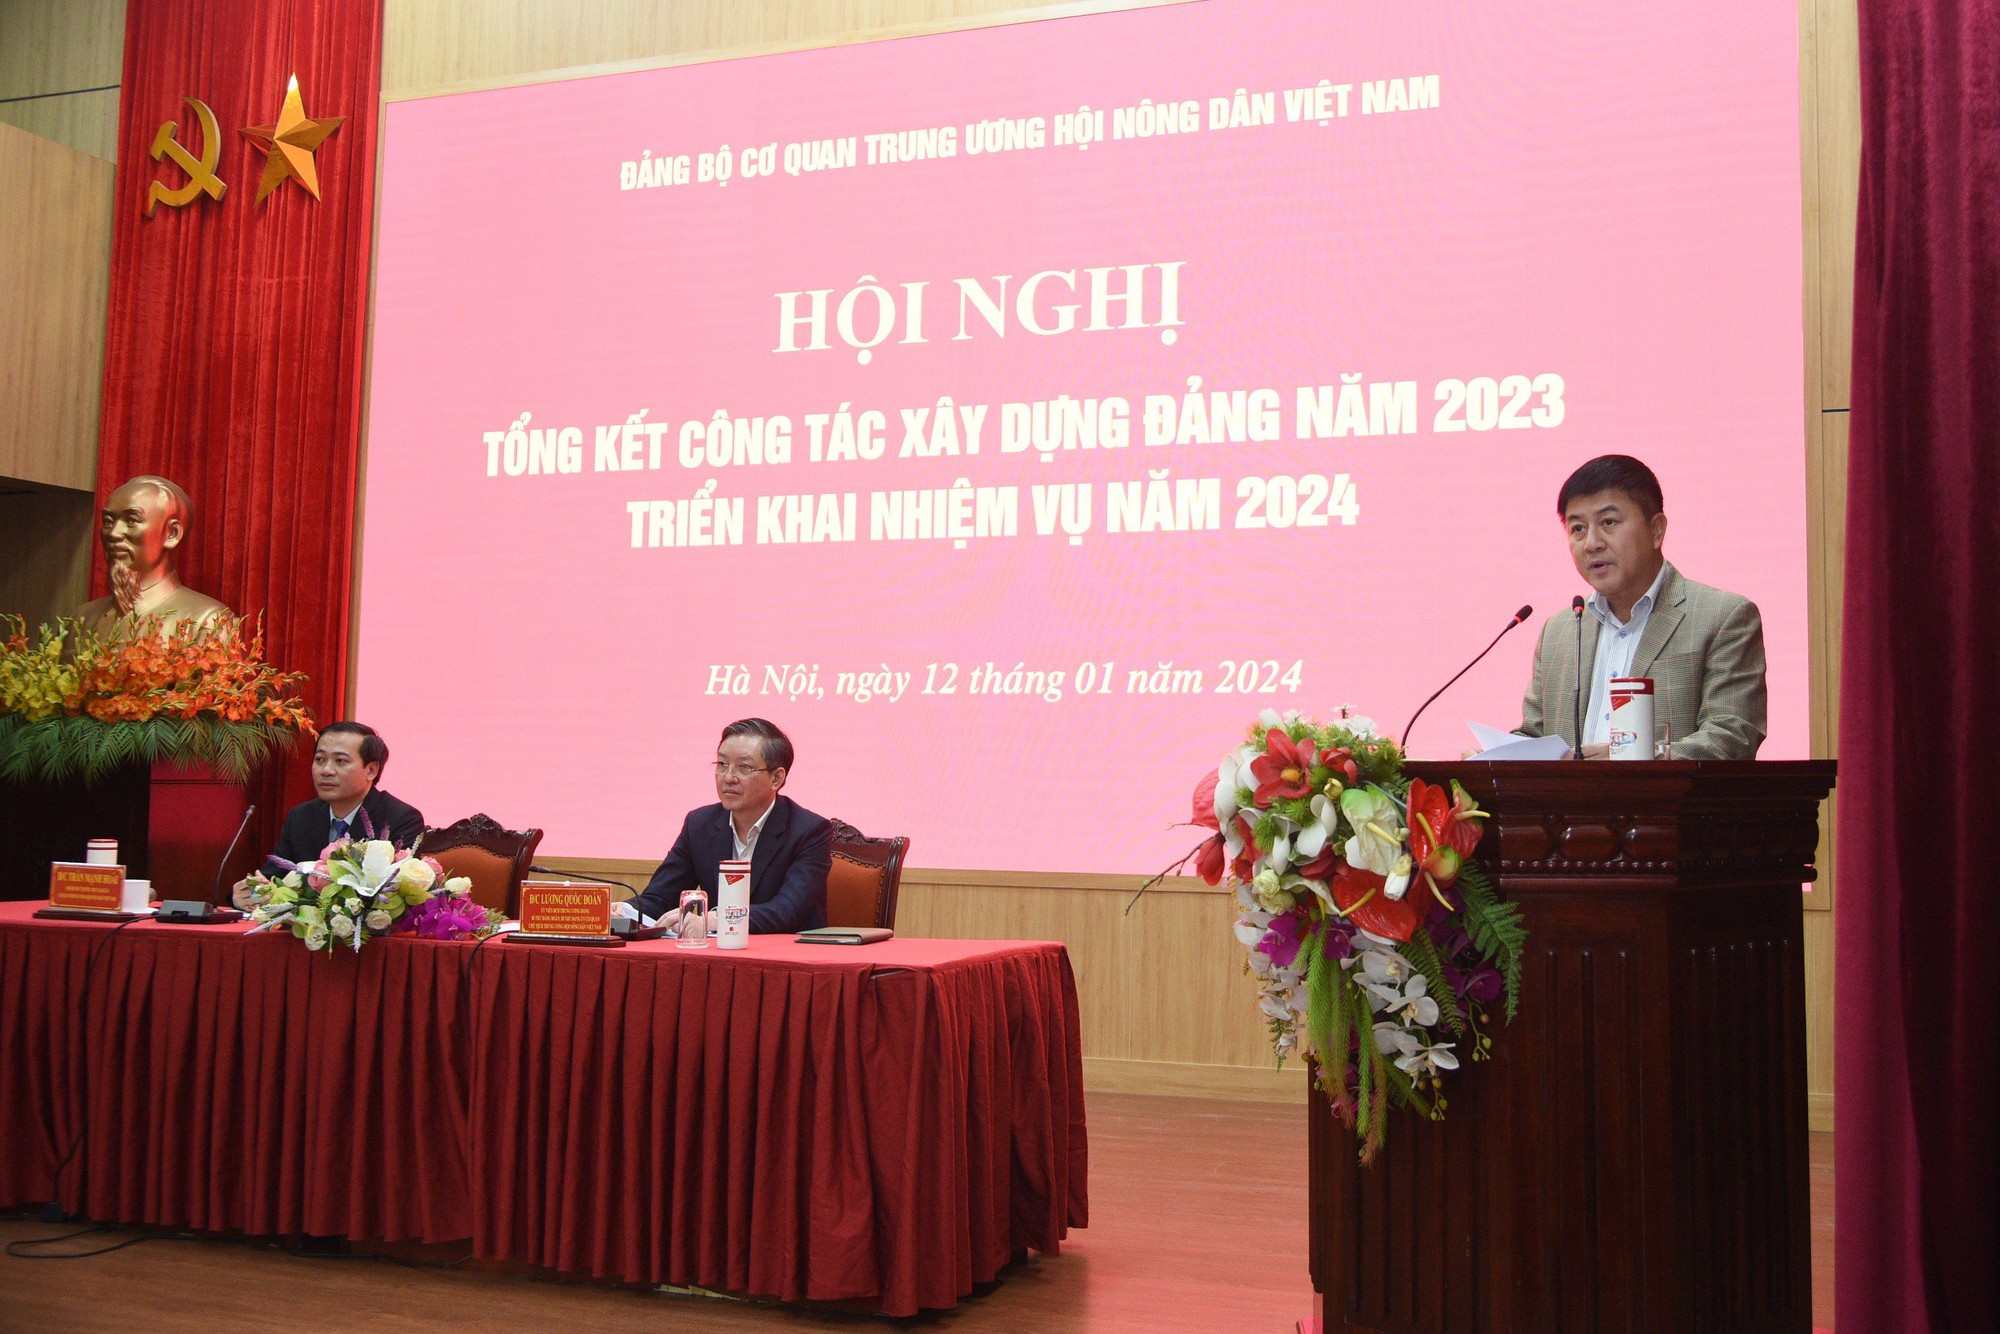 Đảng bộ cơ quan T.Ư Hội Nông dân Việt Nam tổng kết công tác xây dựng Đảng năm 2023, triển khai nhiệm vụ năm 2024- Ảnh 2.